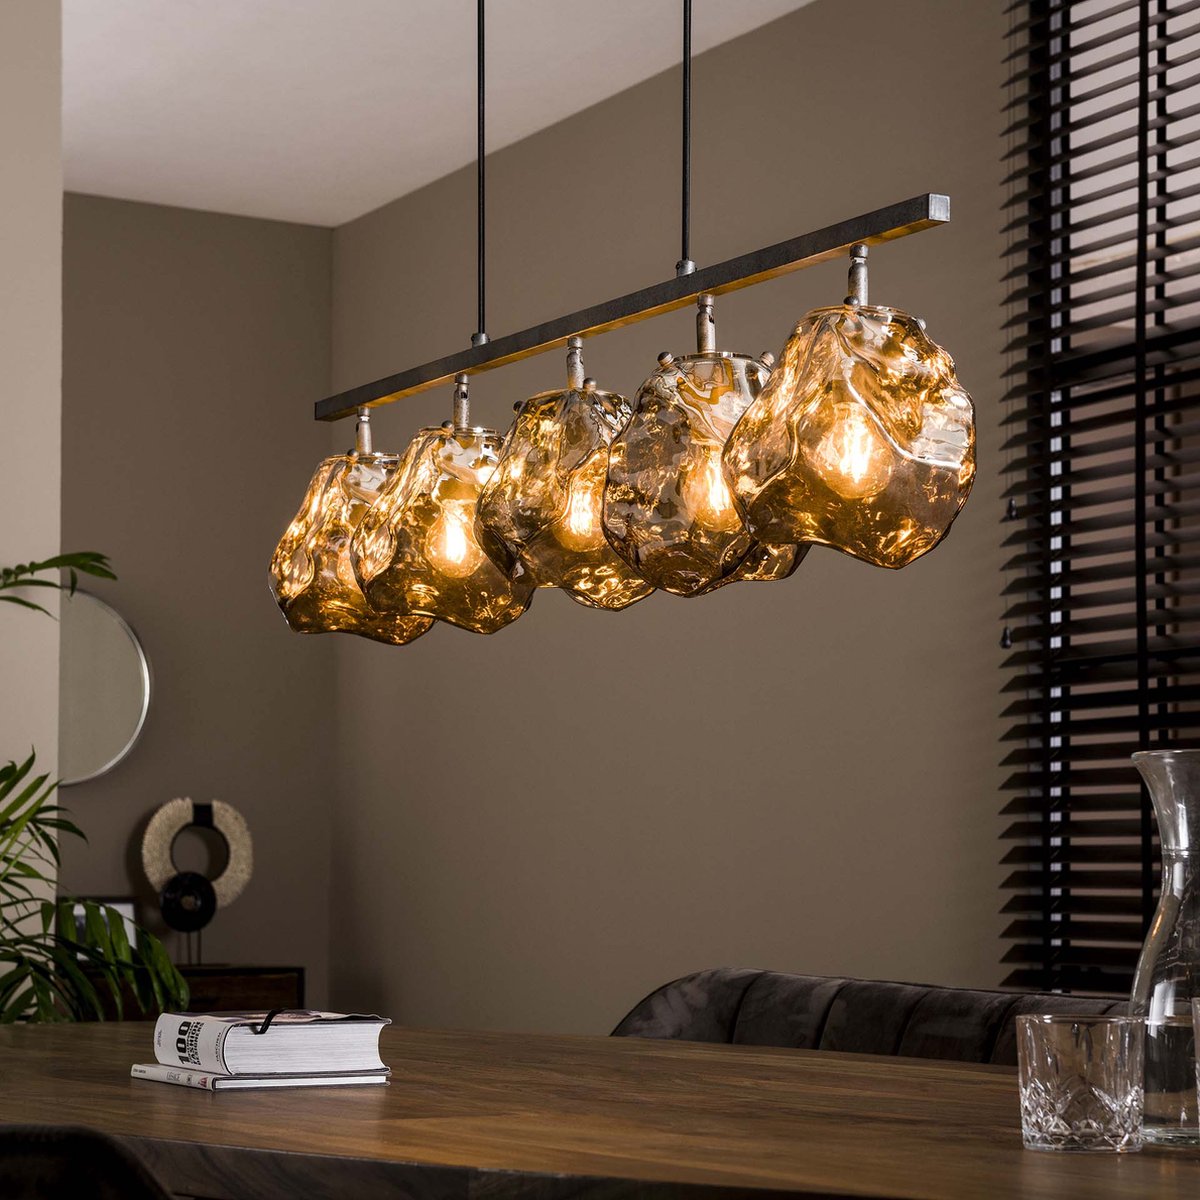 Hanglamp Rock eettafellamp chromed glass | 5 lichts | charcoal / grijs / zwart | glas / metaal | 150 cm lang | eetkamer / eettafel lamp | modern / sfeervol design